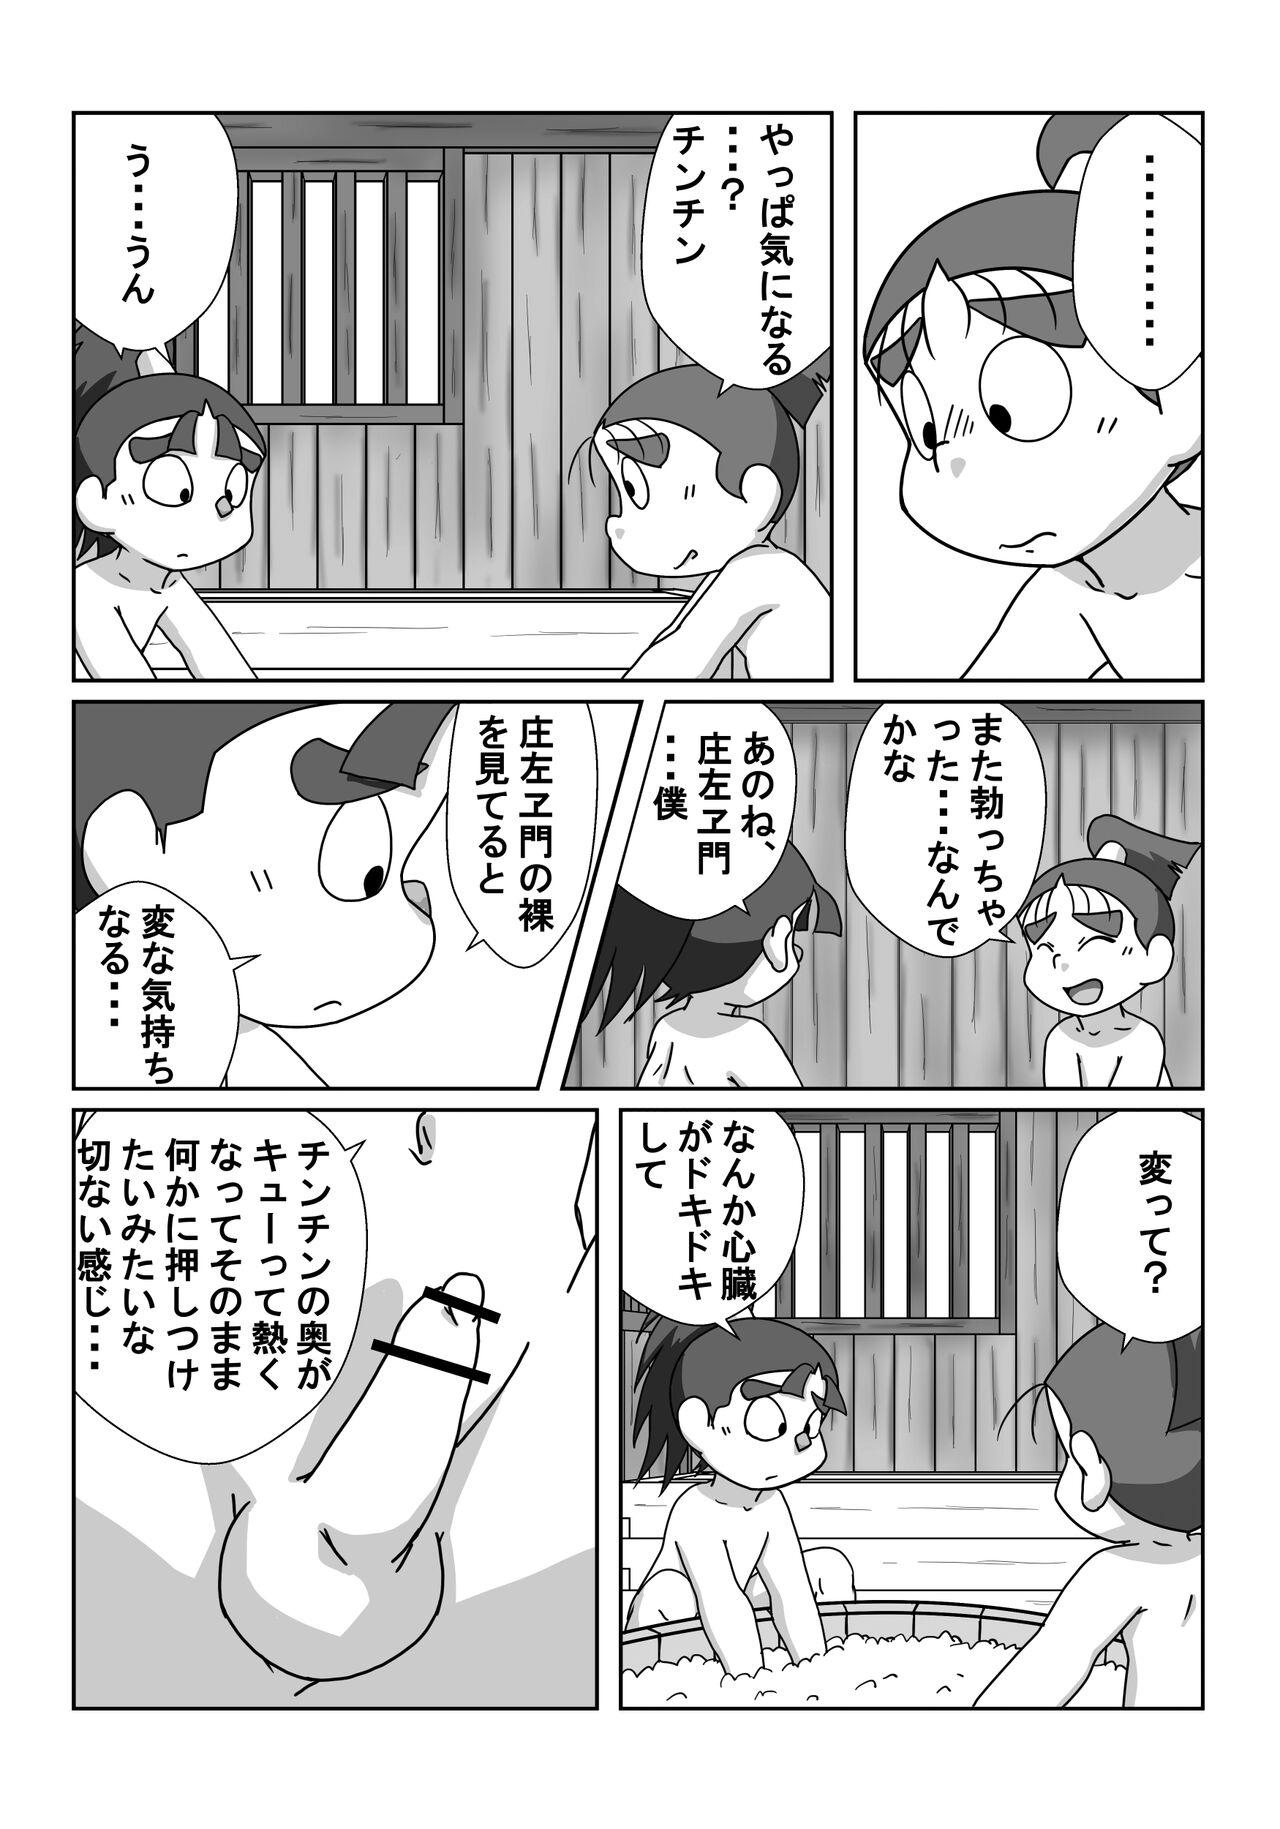 Twerking Ninjutsu Gakuen ni Bokutachi Futarikiri - Part 2 - Nintama rantarou Sexcams - Page 7